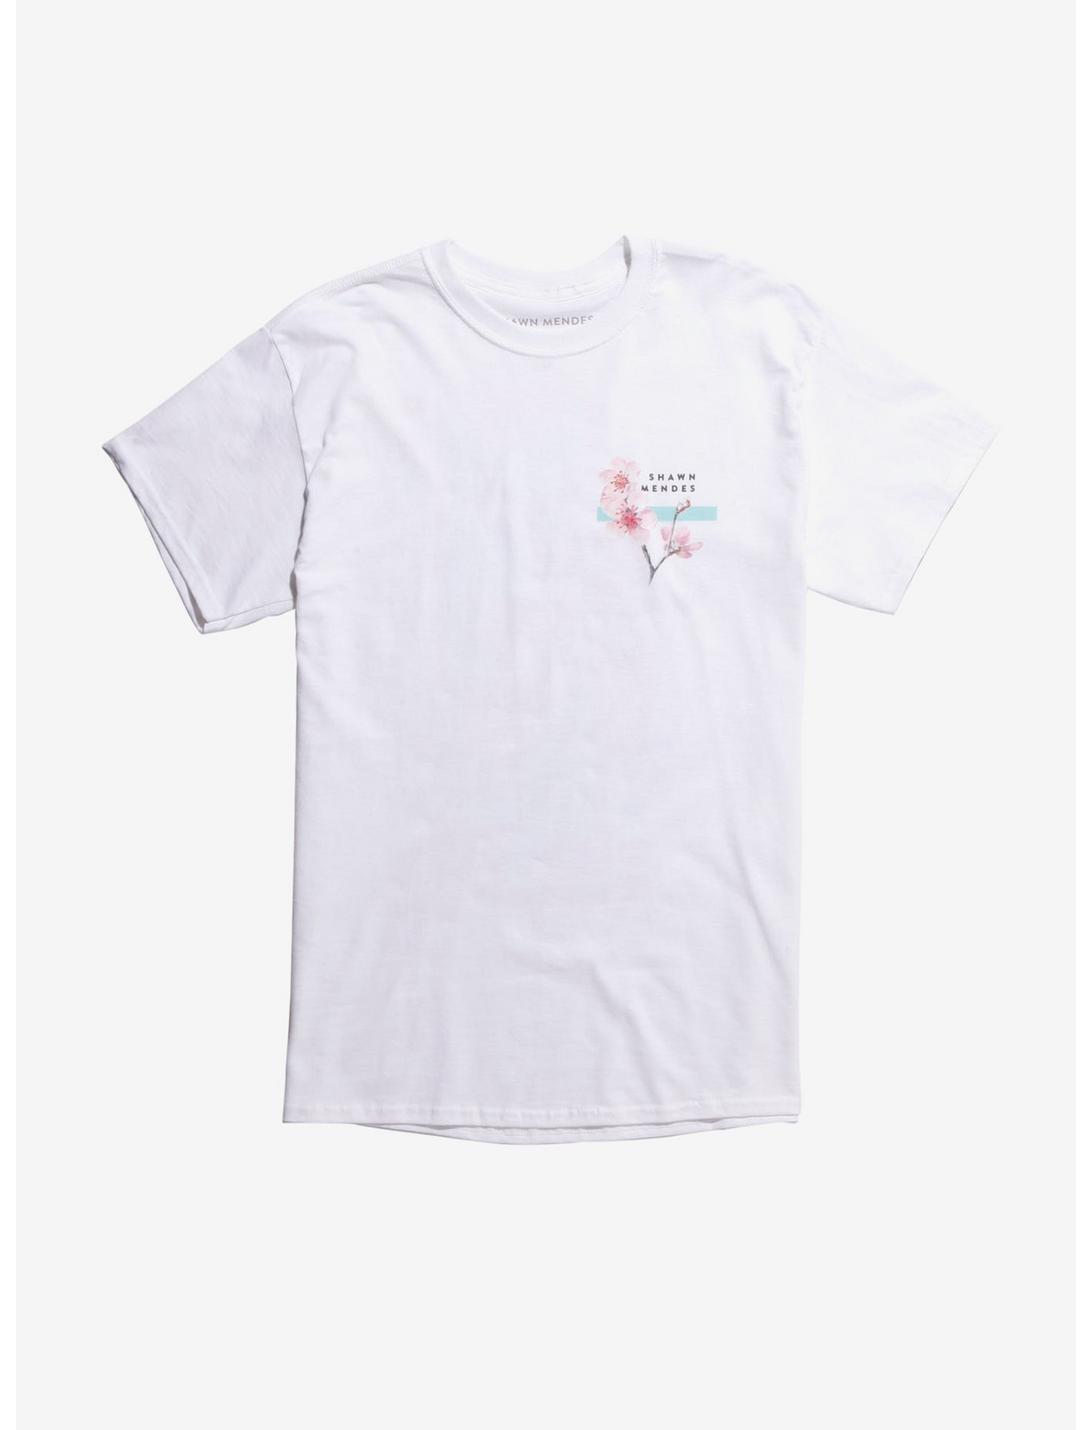 Shawn Mendes Cherry Blossom T-Shirt, WHITE, hi-res